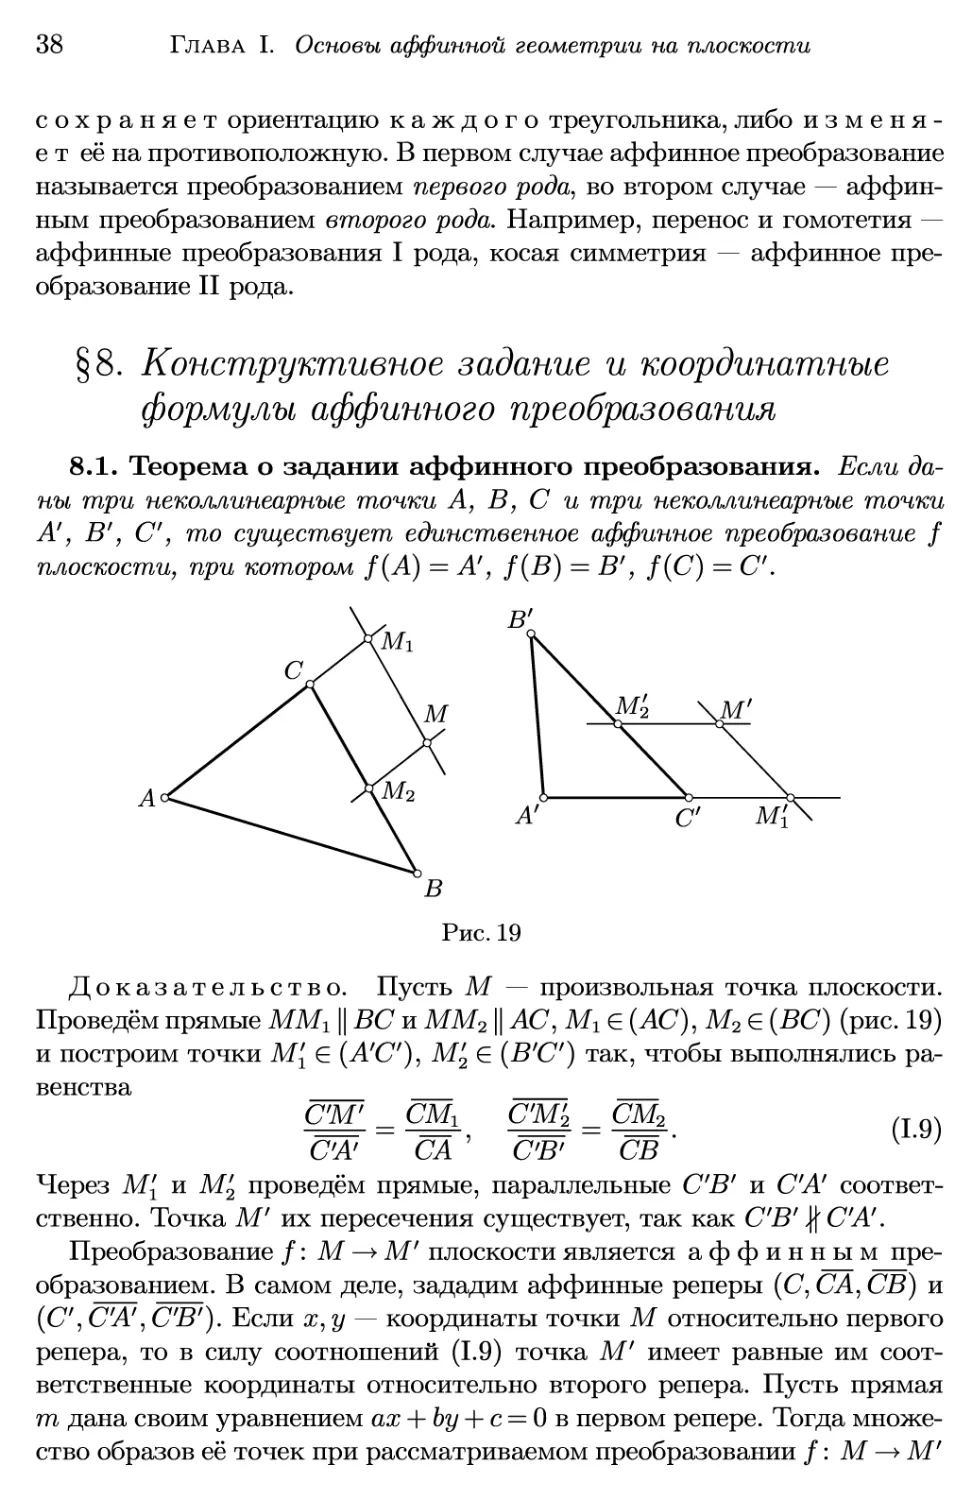 §8. Конструктивное задание и координатные формулы аффинного преобразования